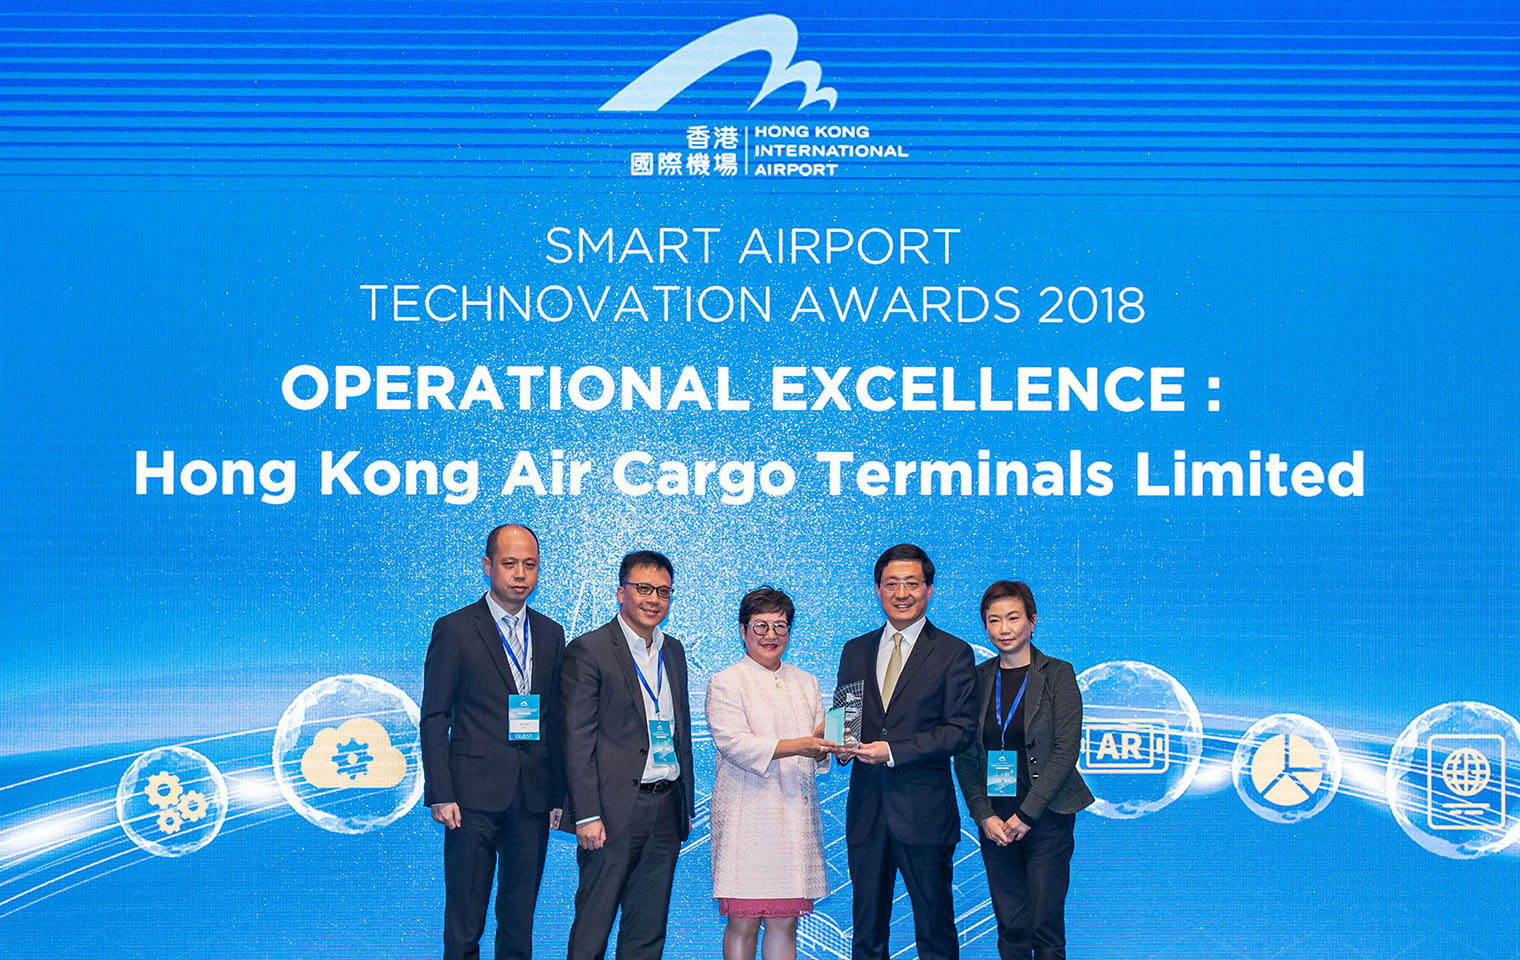 Hong Kong Air Cargo Terminals Limited